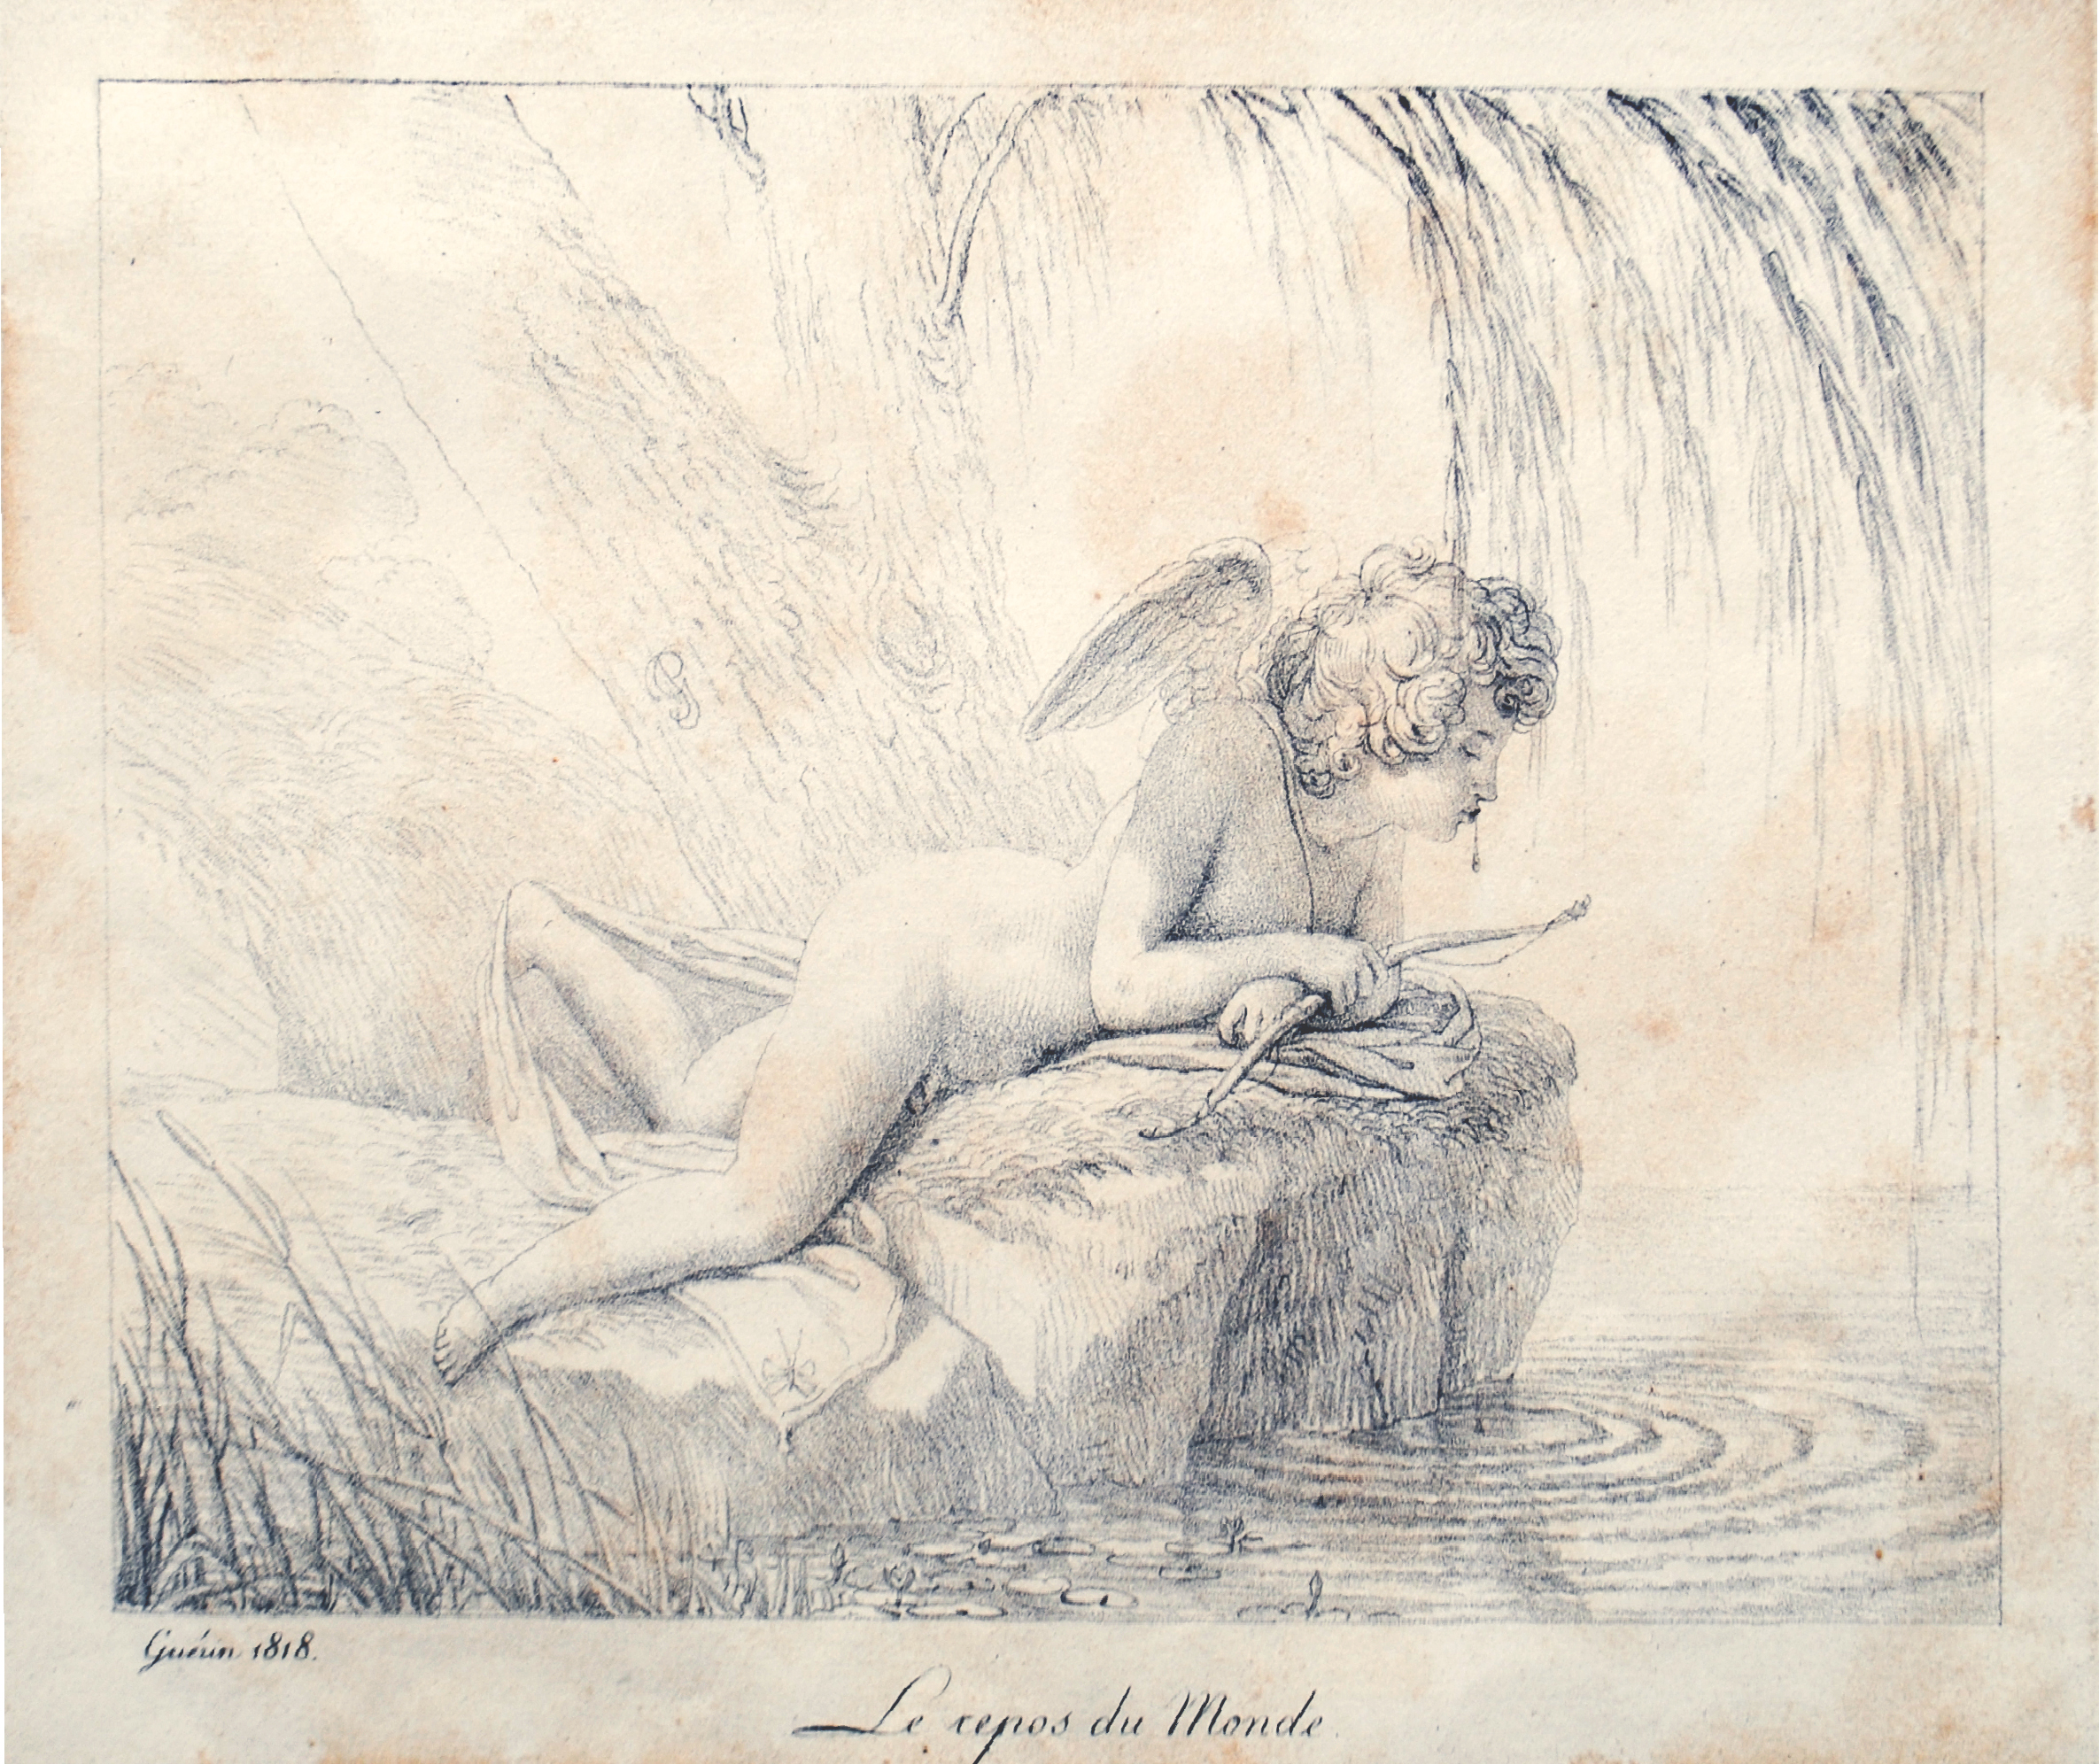 Pierre-Narcisse Gurin, Le Repos du Monde, chalk lithograph, 1816